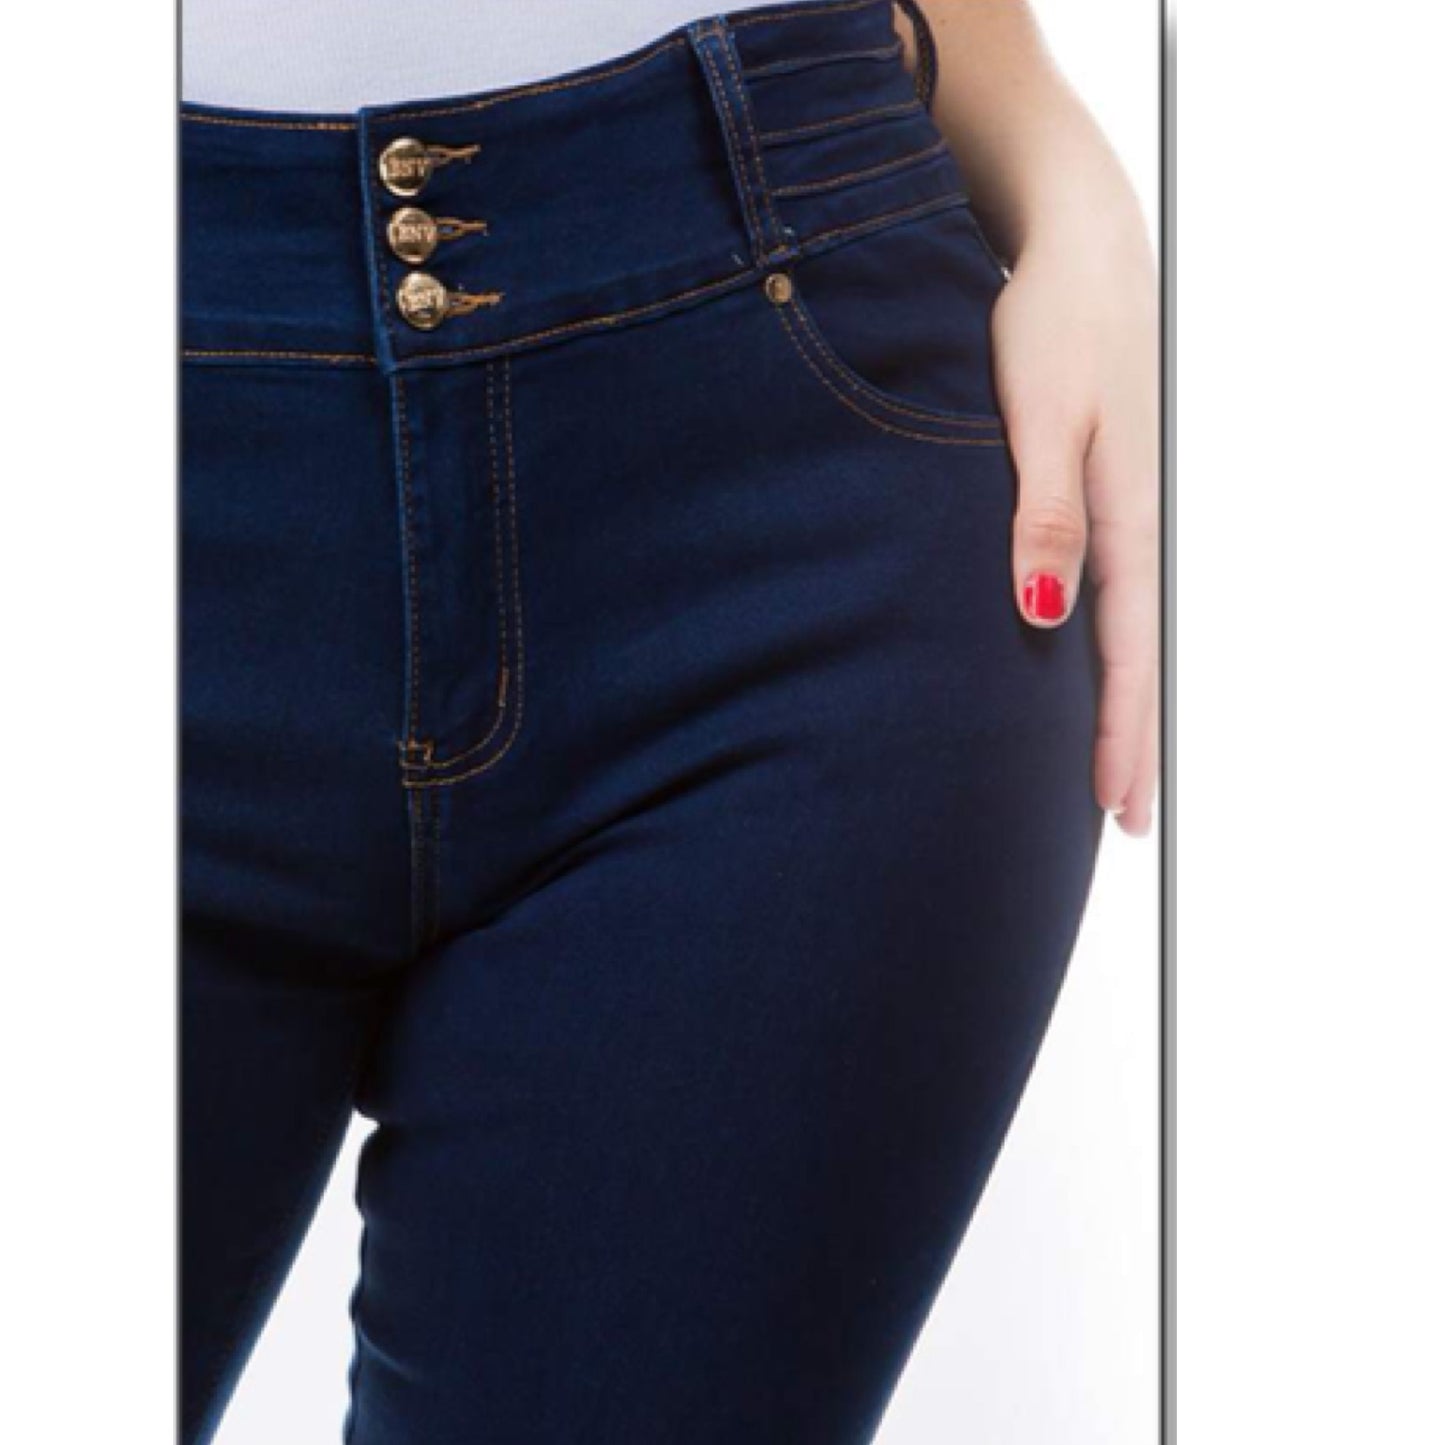 BENAVA Jeans - BINS FLIRTY FASHION